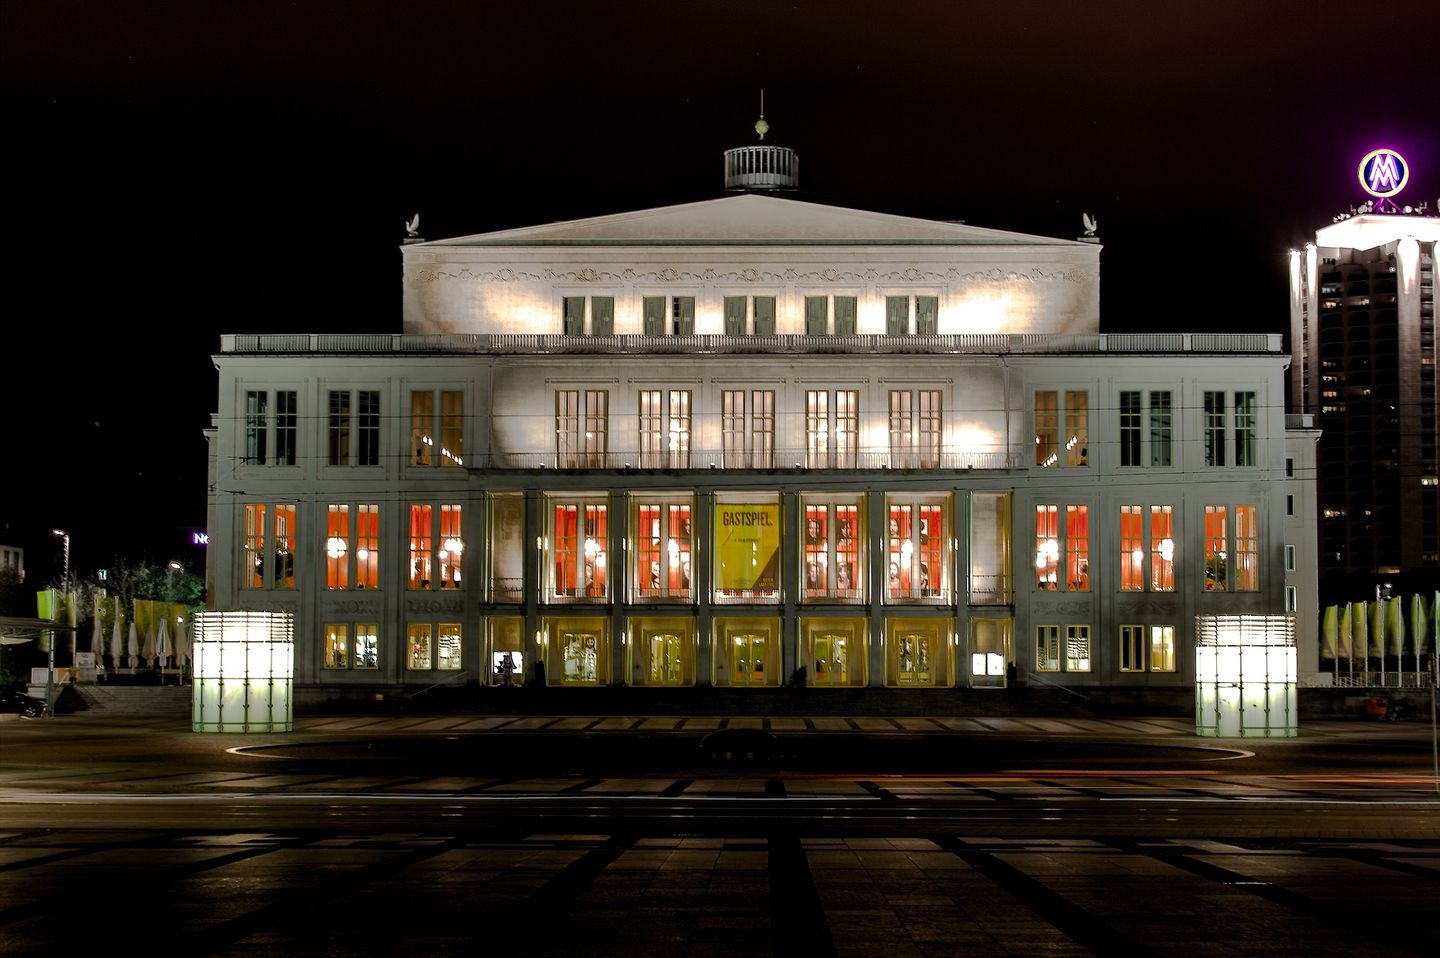 Oper Leipzig am Abend